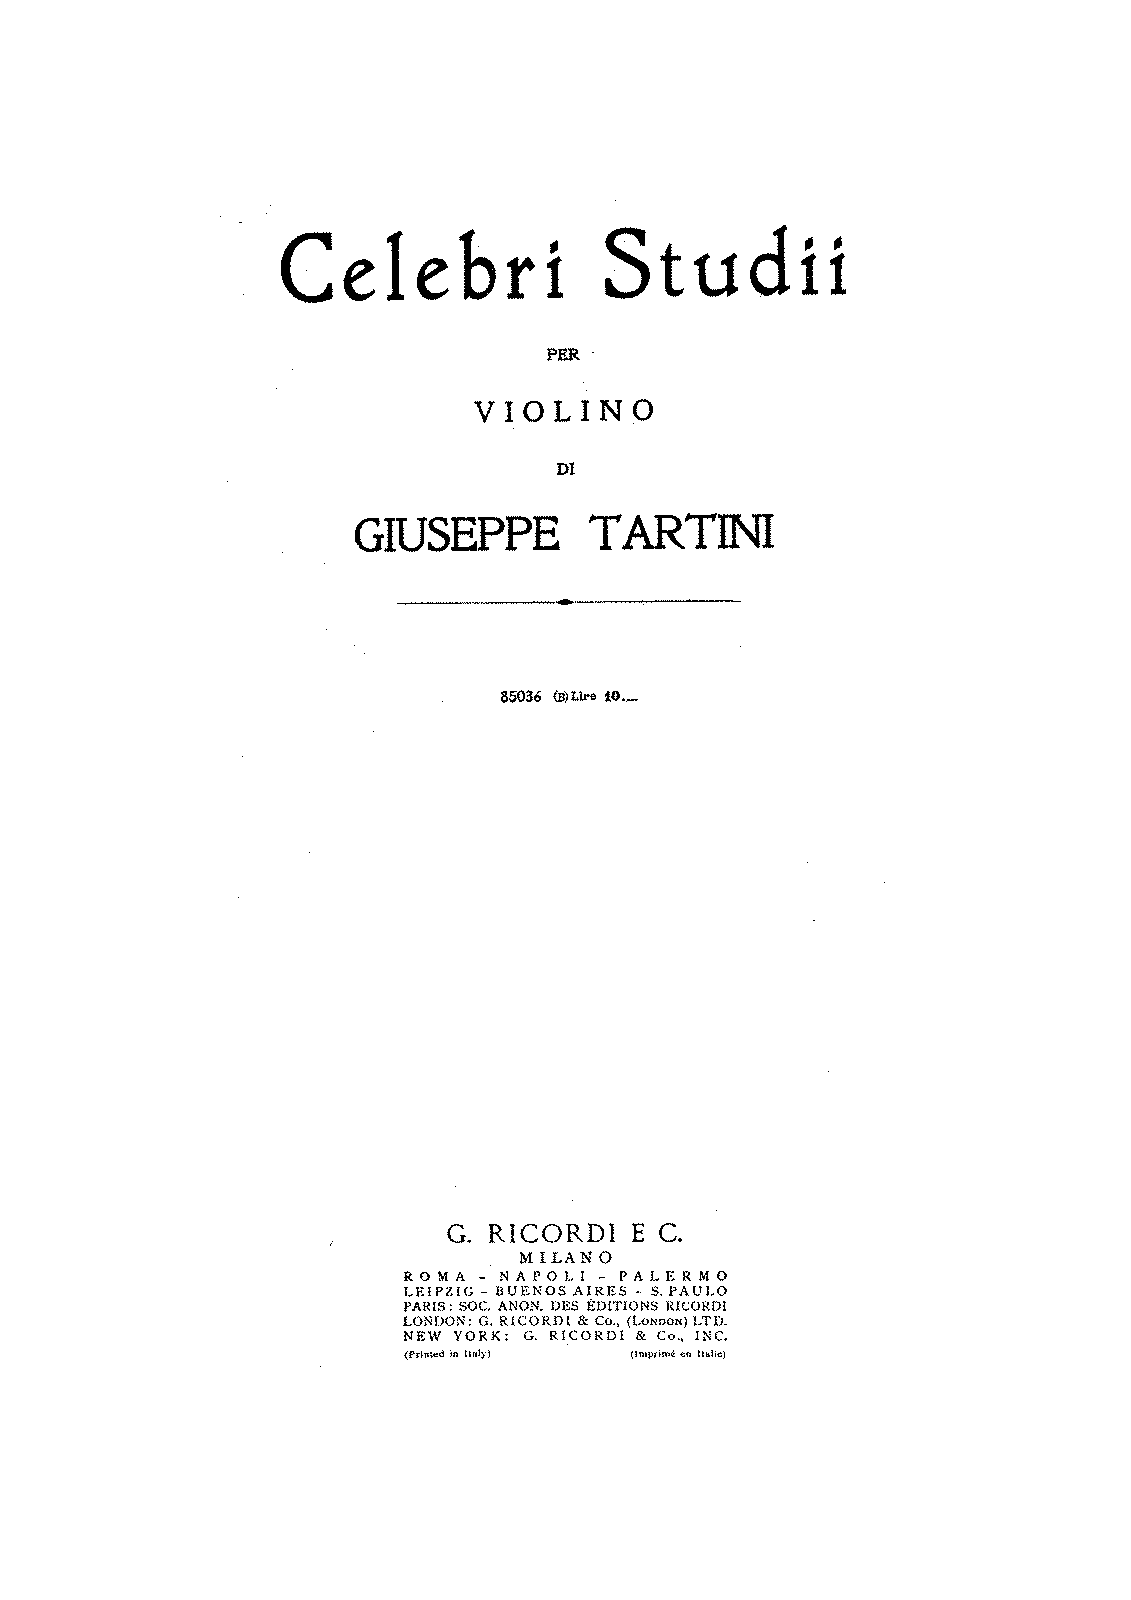 Studies for Violin (Tartini, Giuseppe) - IMSLP